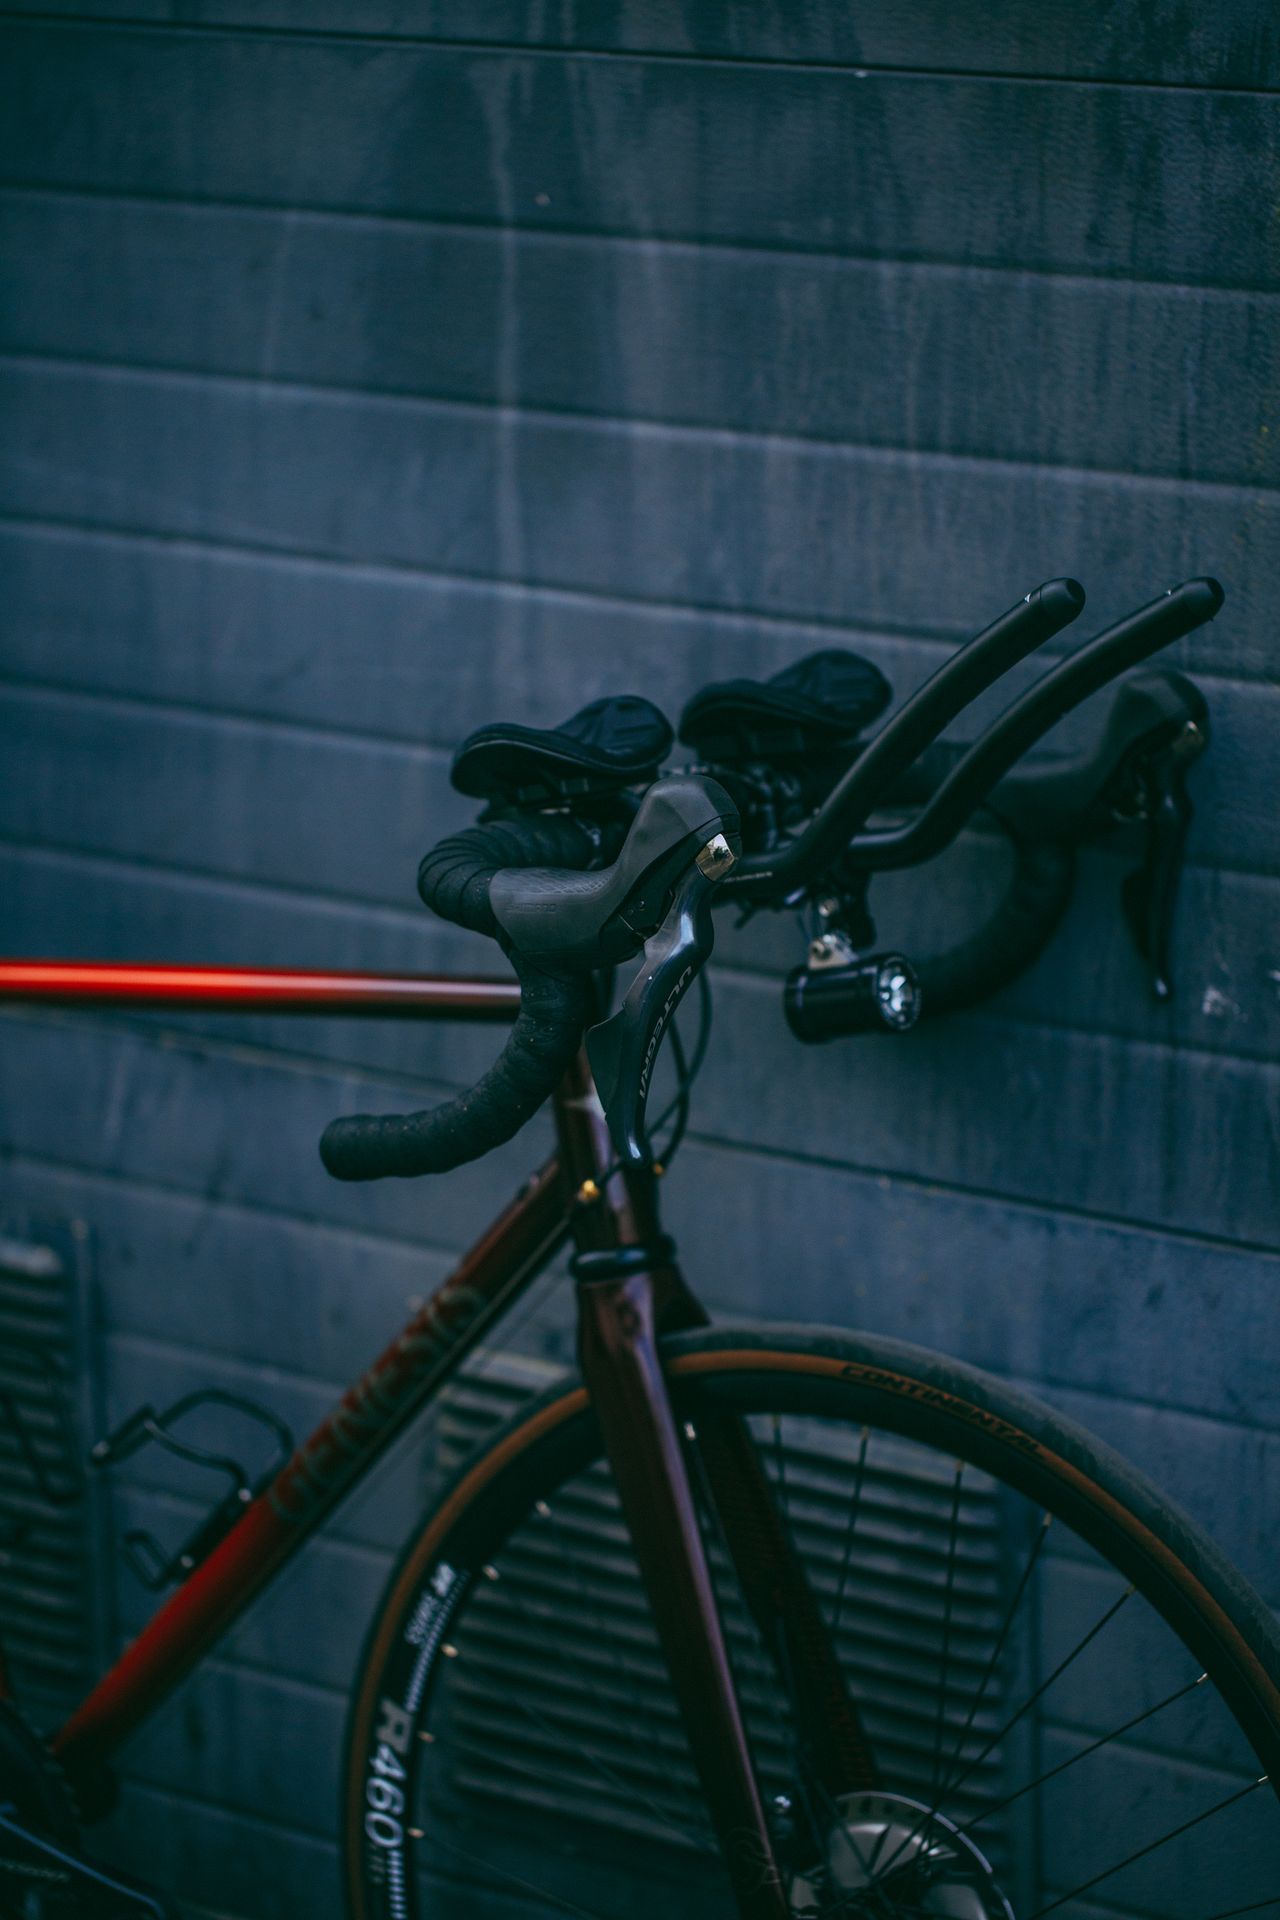 Magasin de cycles et atelier de réparation et montage vélo à la carte à Paris 13eme spécialisé dans le gravel et le voyage. Genesis, Volare, prolongateur